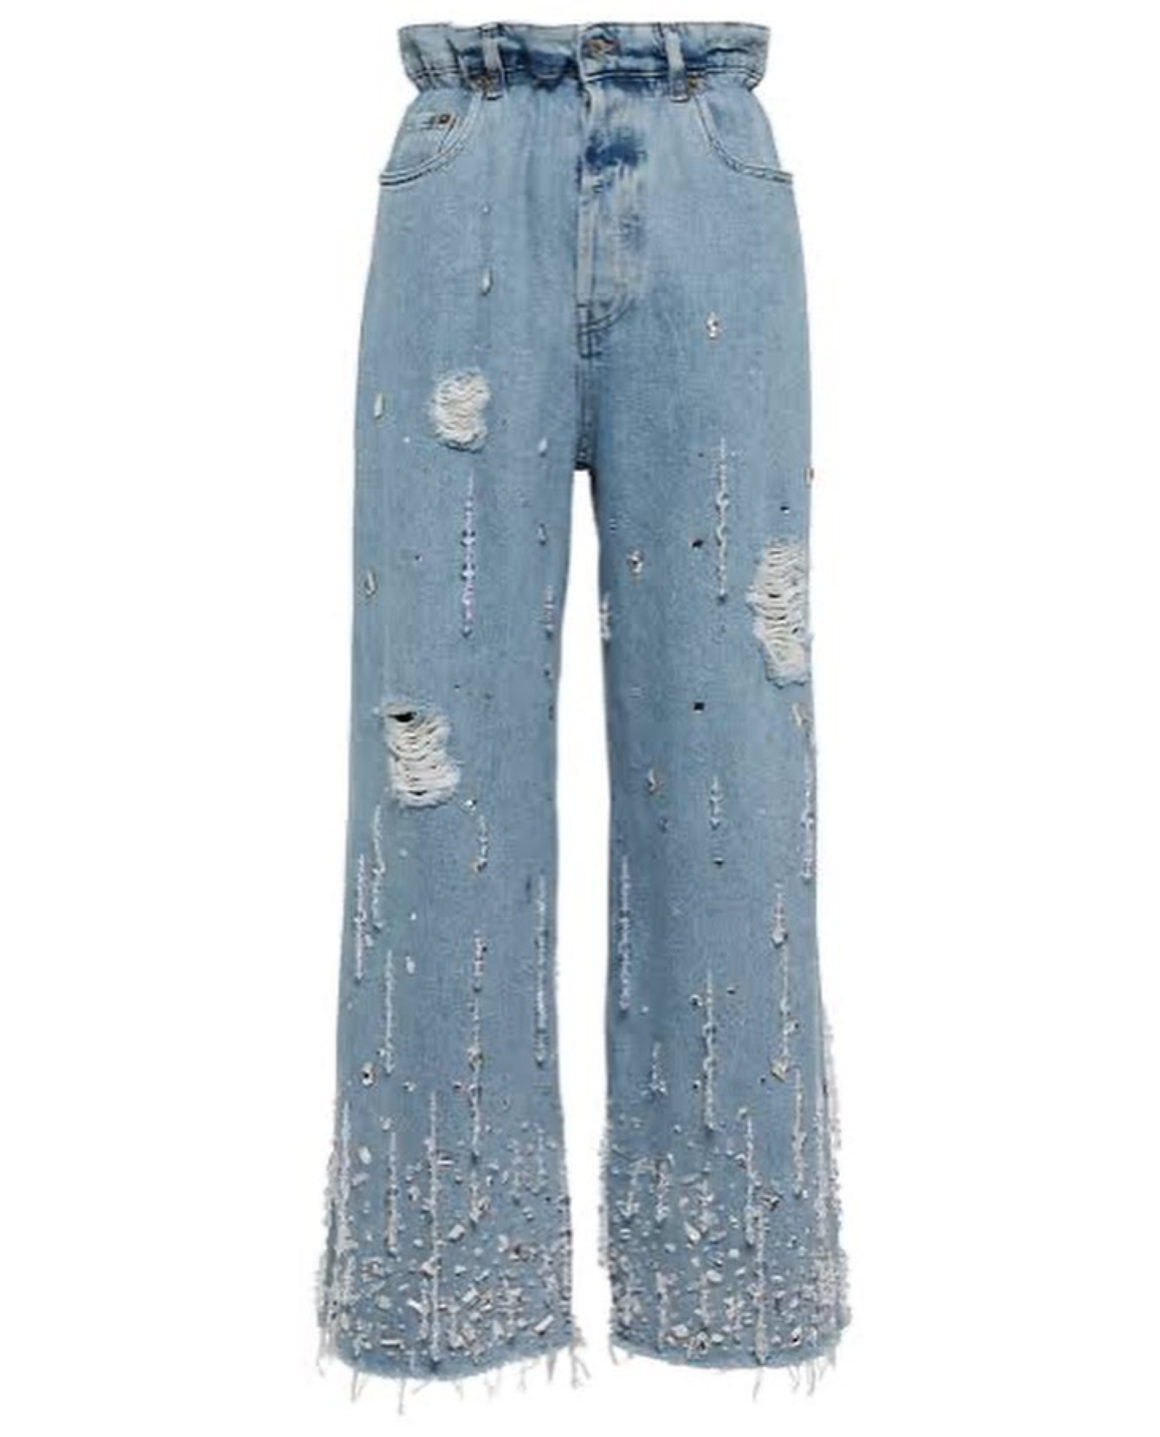 Okayyyyy 😍 Ari Fletcher looking BOMB in her @FashionNova jeans